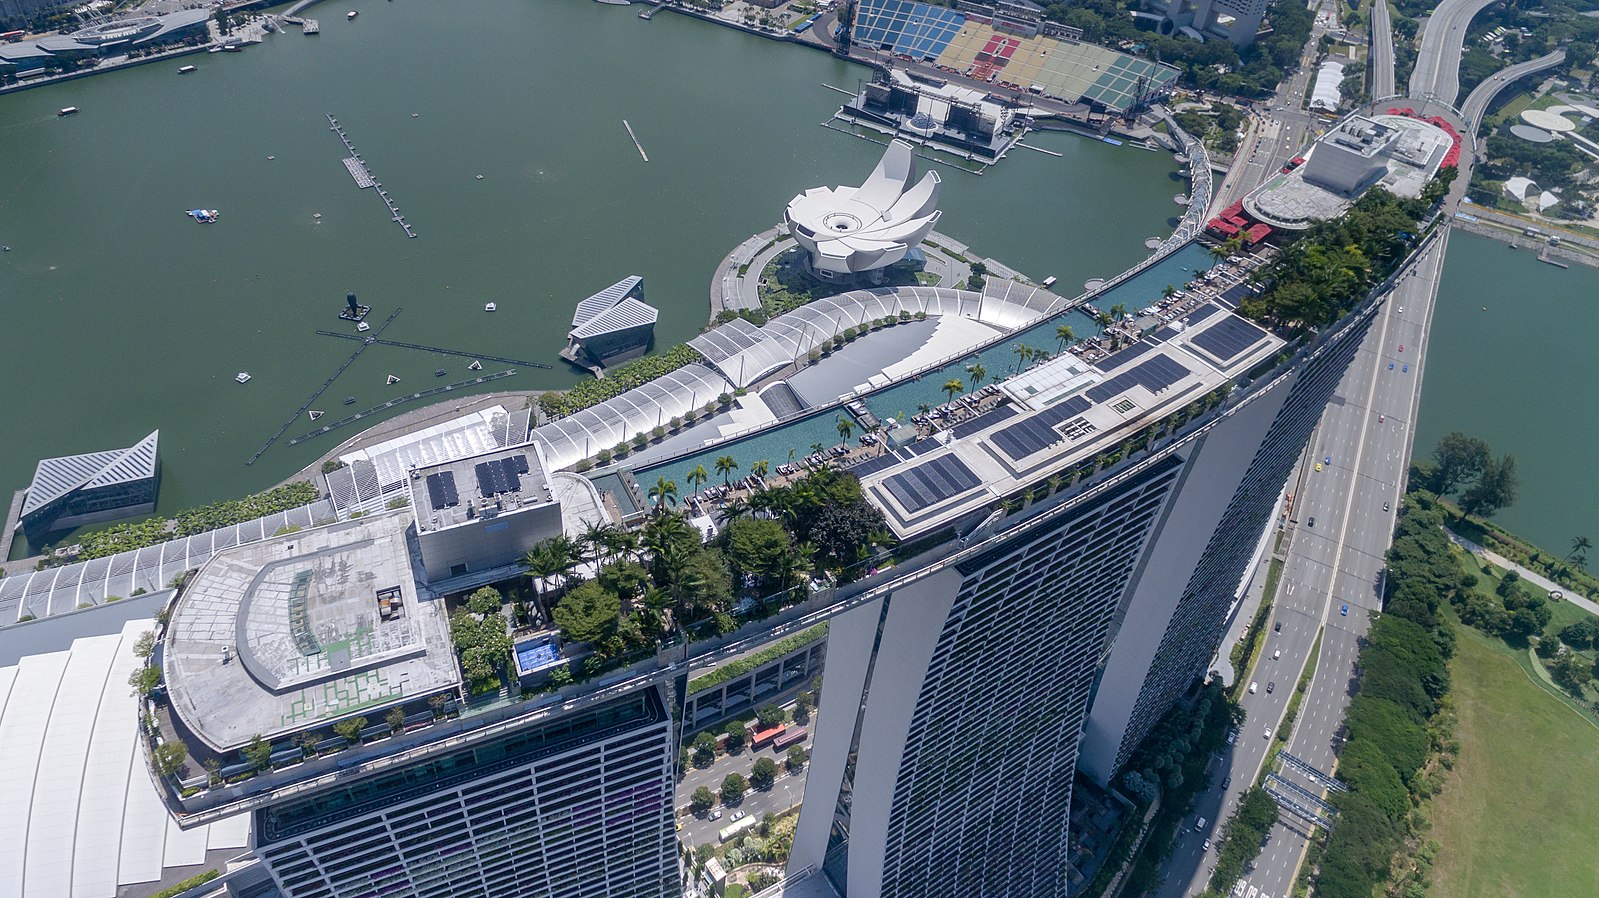 Отель лодка в сингапуре